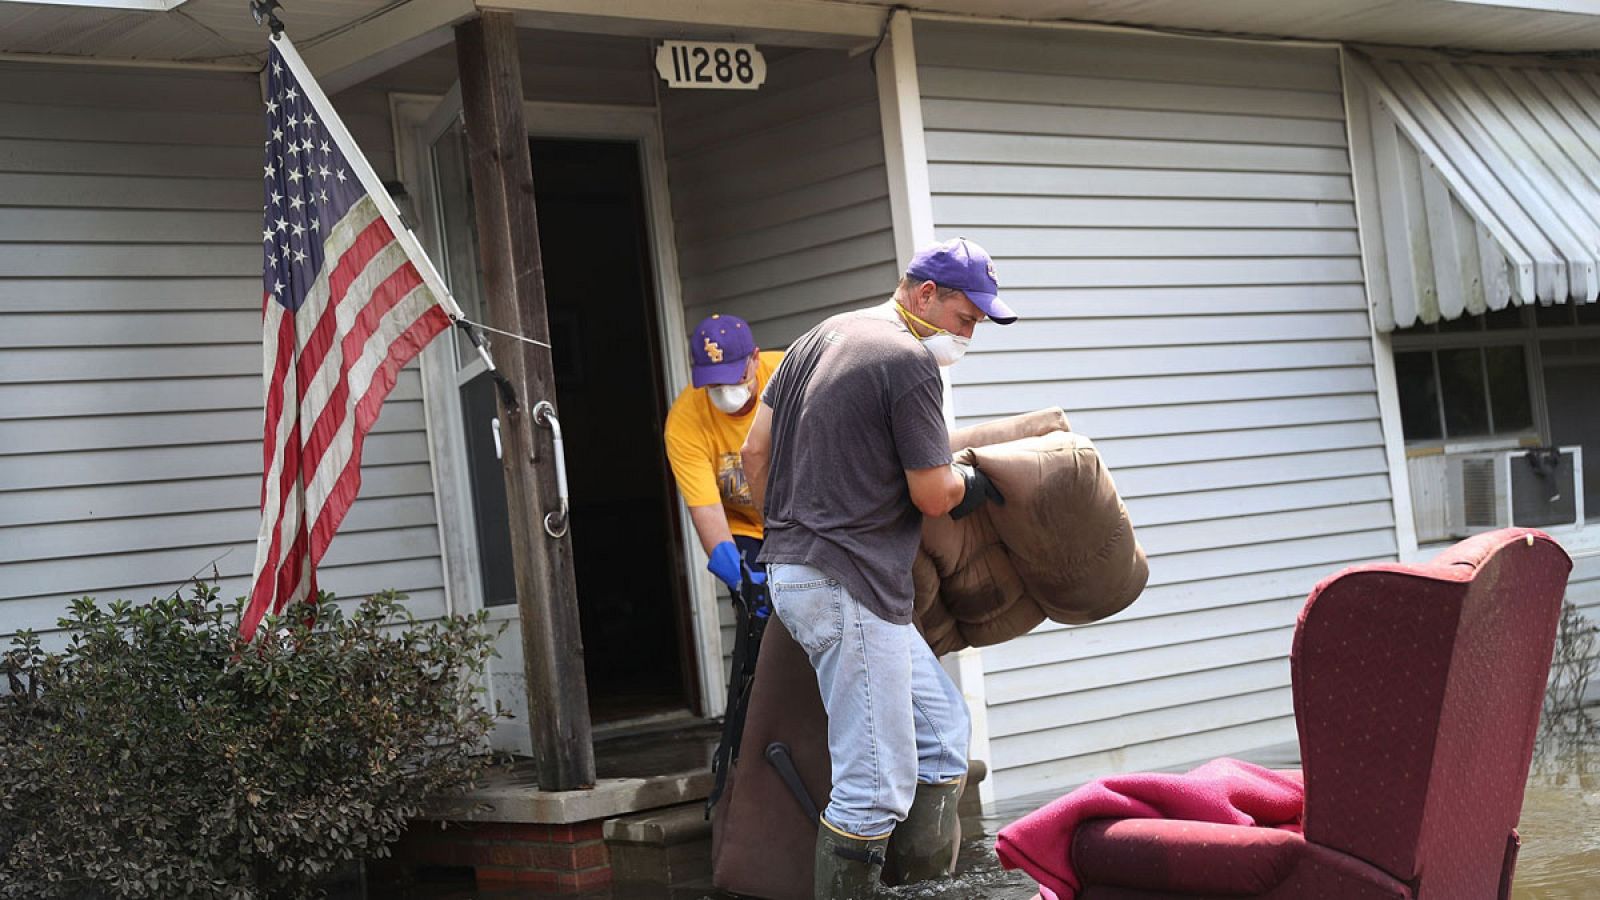 Dos personas retiran de una casa los muebles y objetos dañados tras las inundaciones que han afectado el estado de Luisiana.